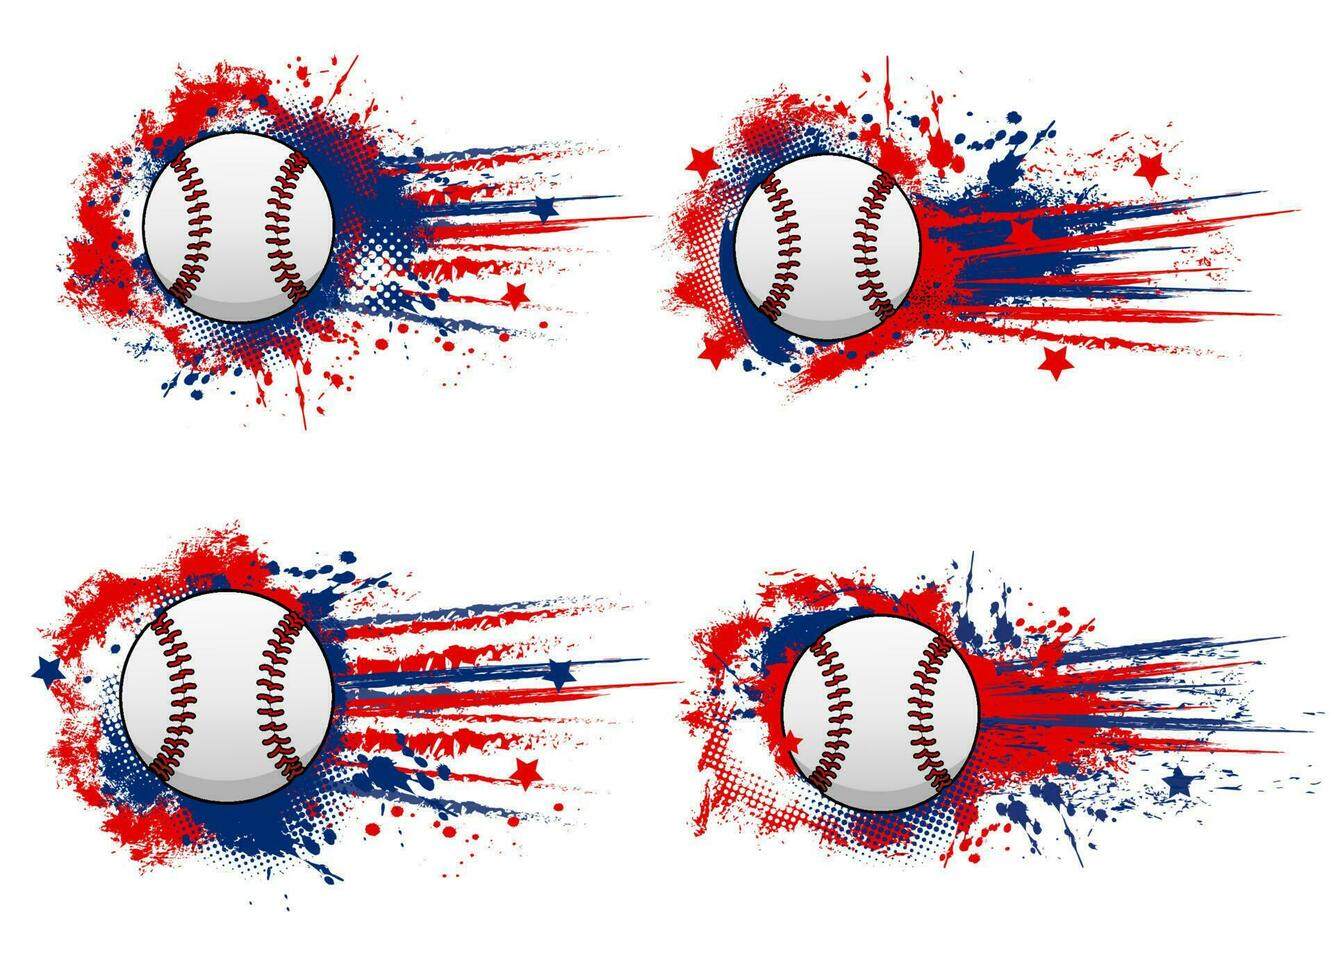 béisbol pelota en pintar chapoteo grunge bandera, impresión vector